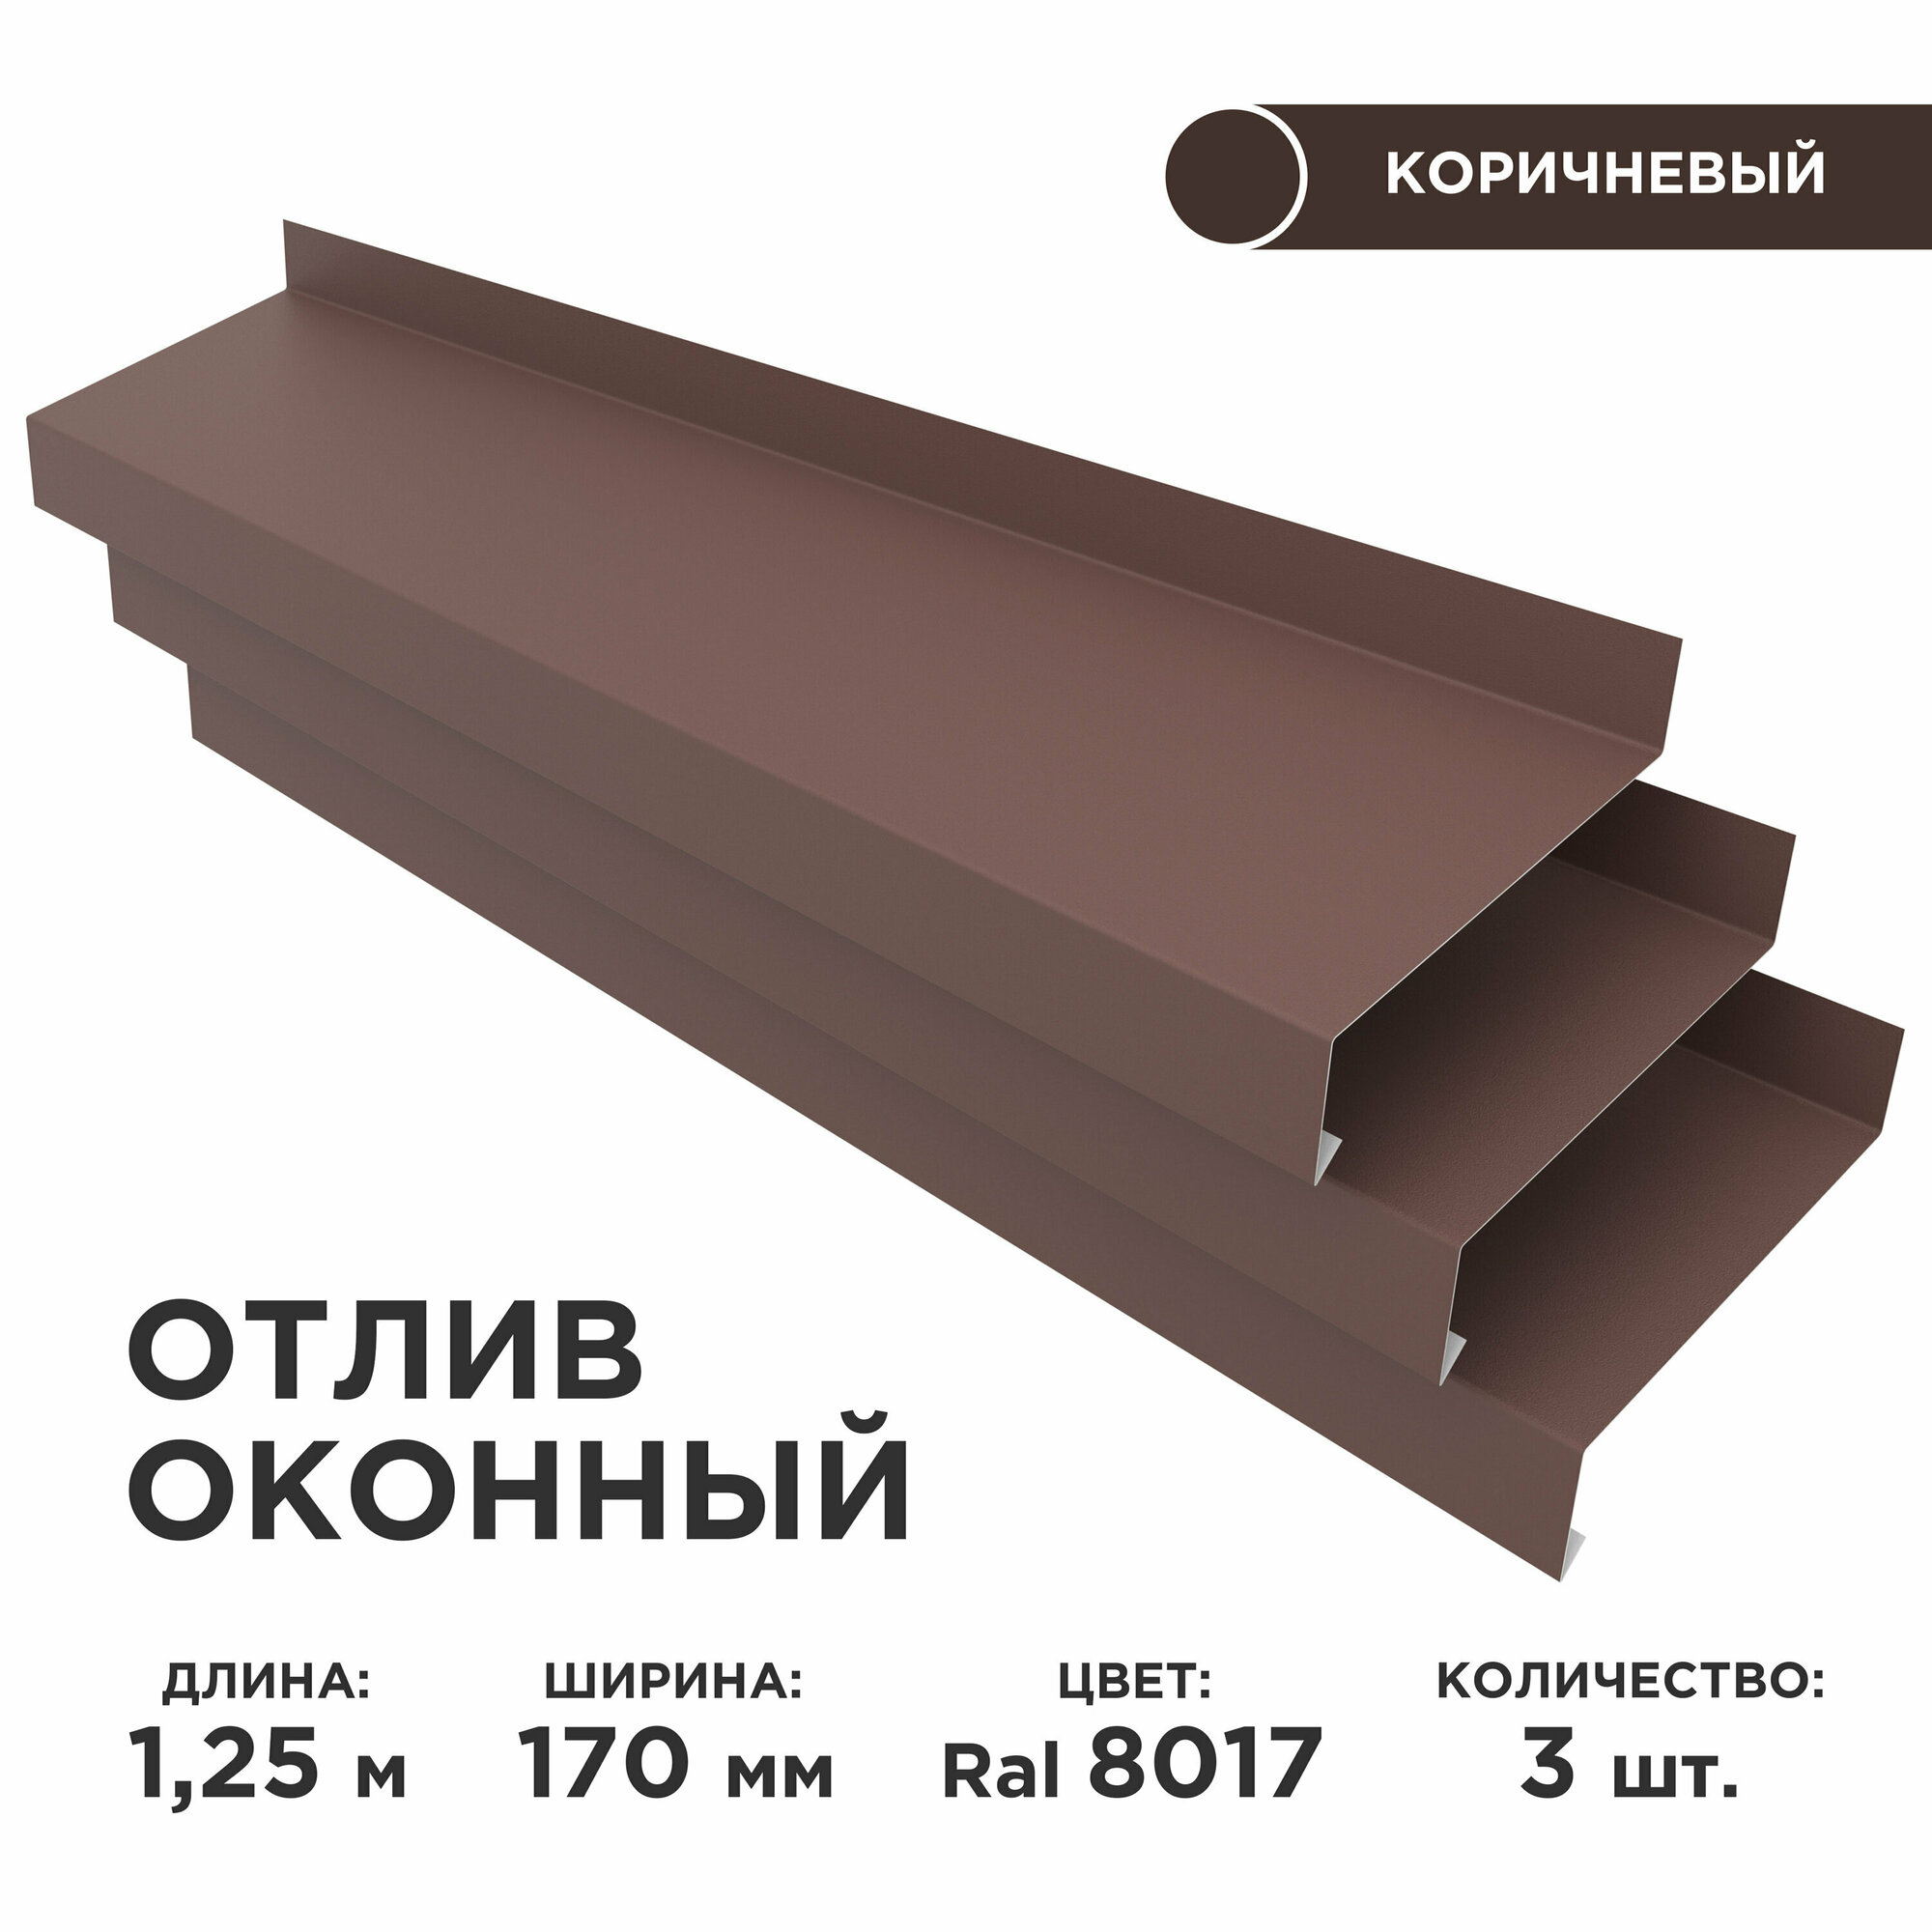 Отлив оконный ширина полки 170мм/ отлив для окна / цвет коричневый(RAL 8017) Длина 1,25м, 3 штуки в комплекте